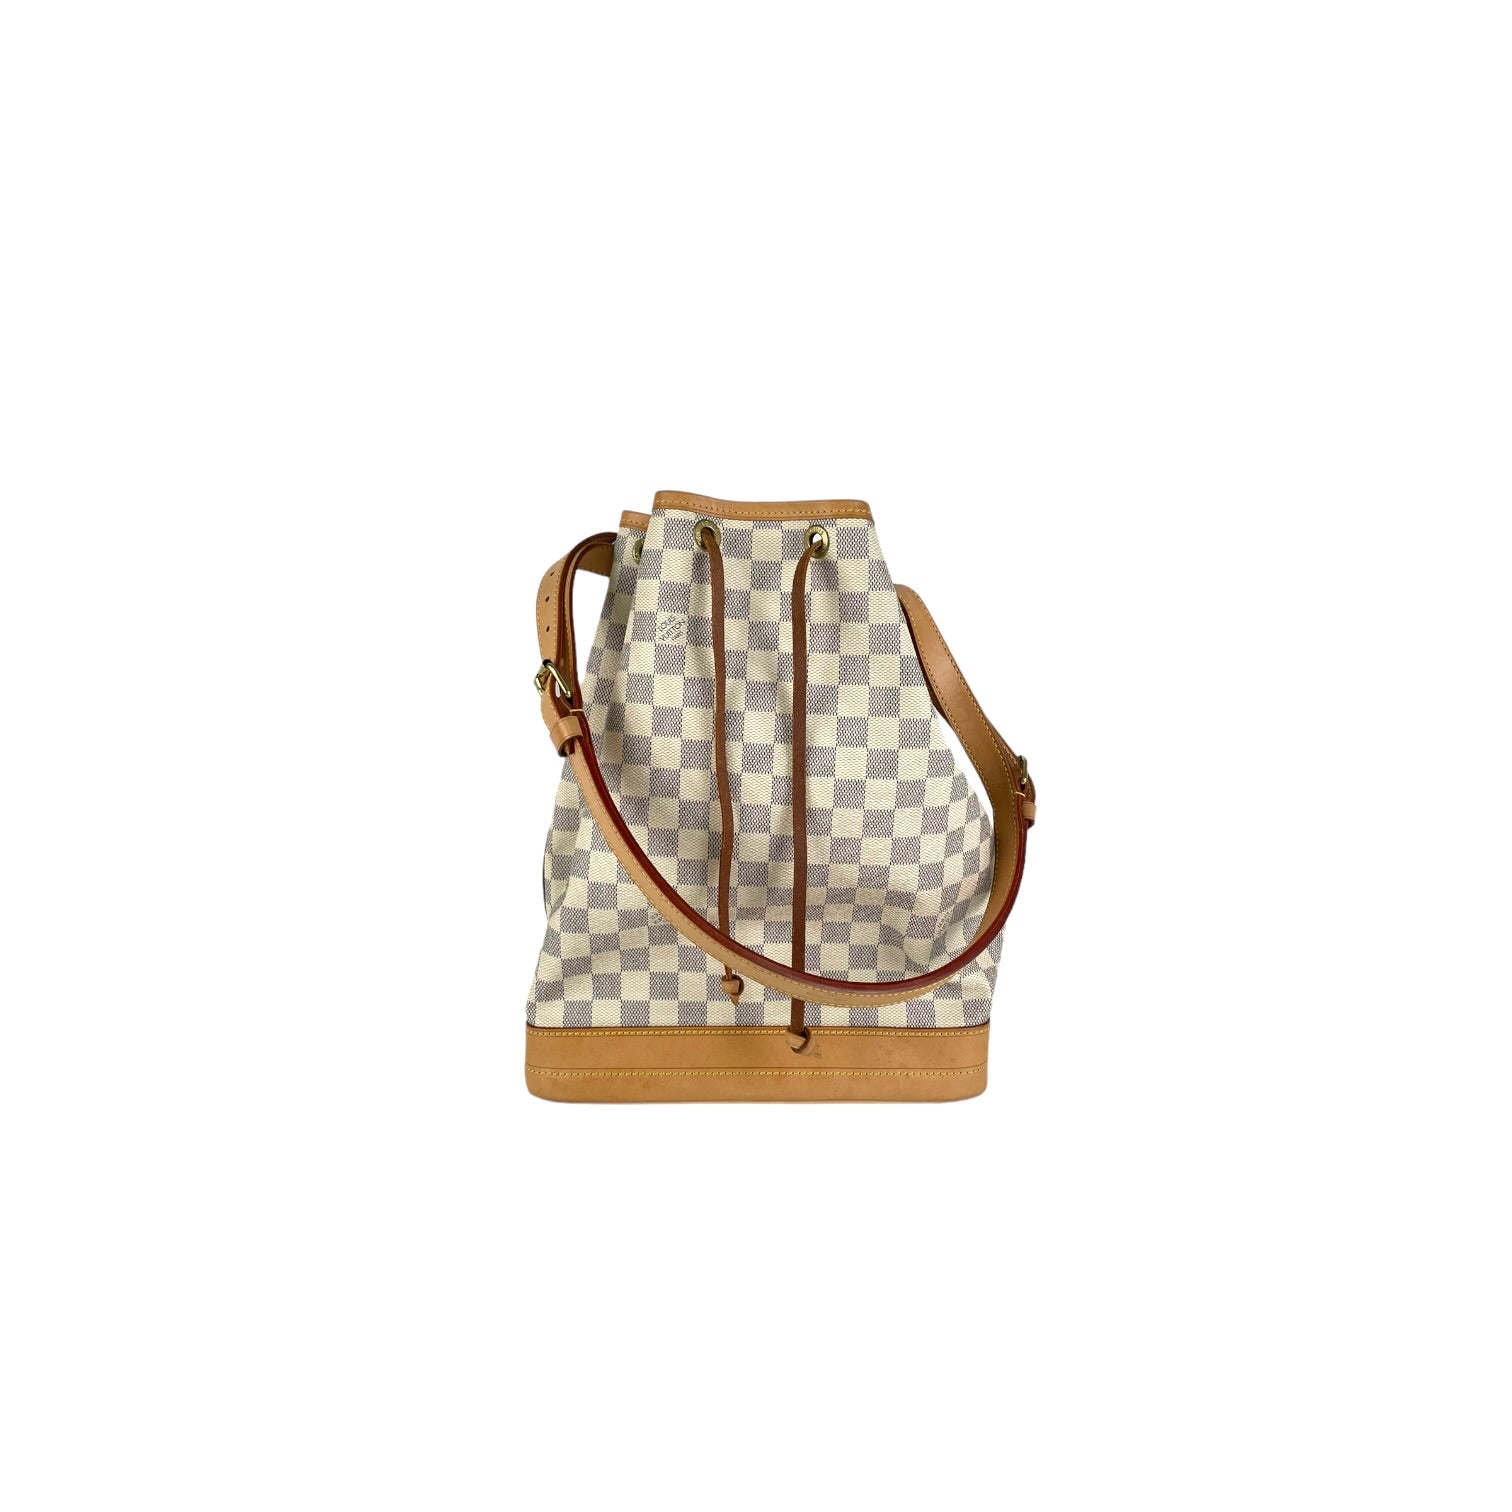 Louis Vuitton Vintage Noe Bucket Bag Damier Azur - THE PURSE AFFAIR